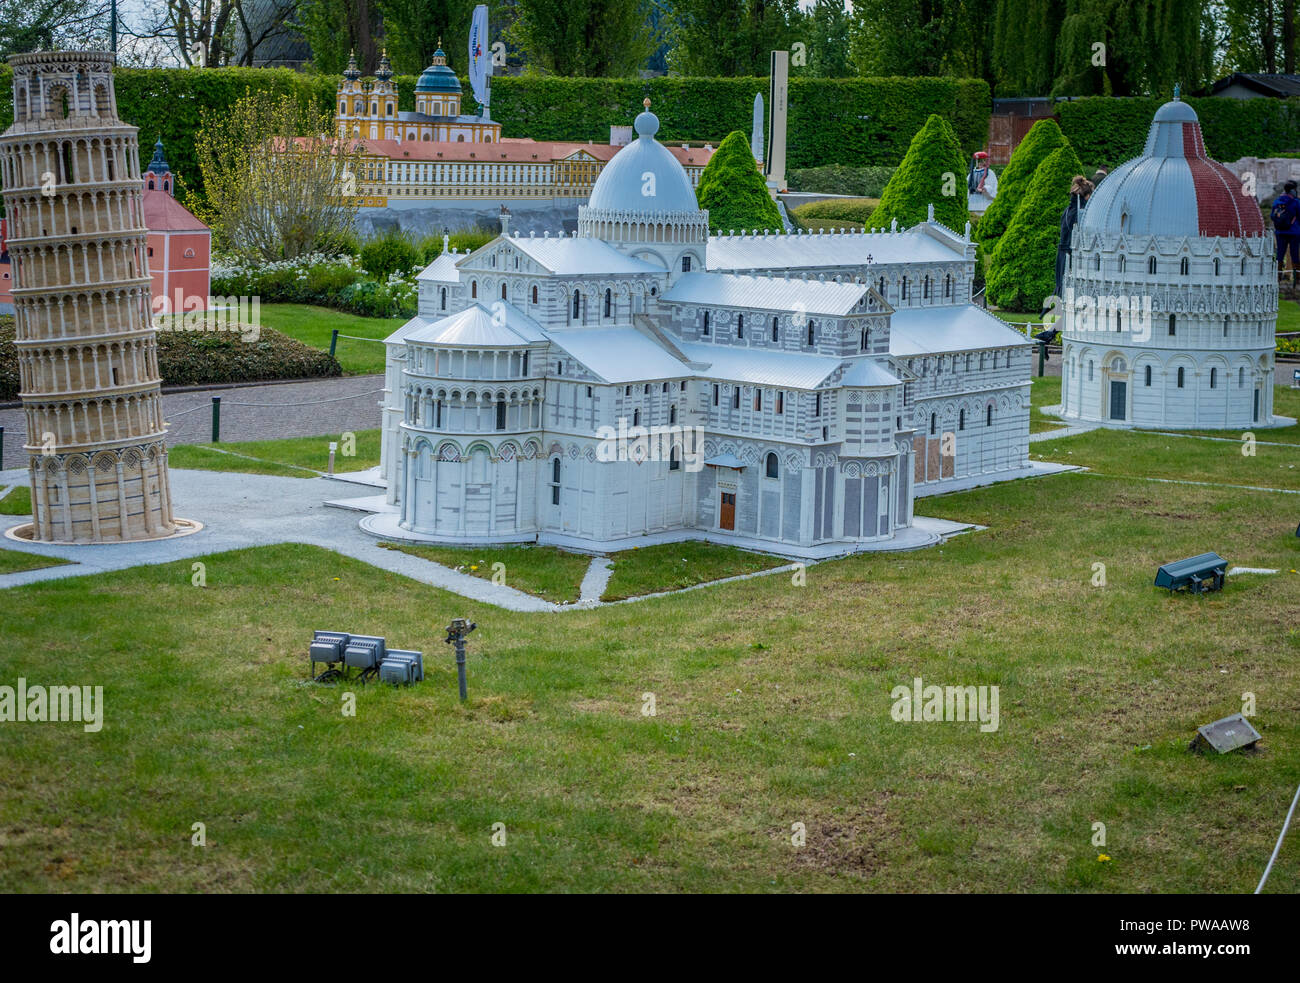 Bruxelles, Belgique - 17 Avril 2017 : Miniatures au parc Mini-Europe - reproduction de la tour de Pise et la Piazza del Duomo en Italie, Europ Banque D'Images